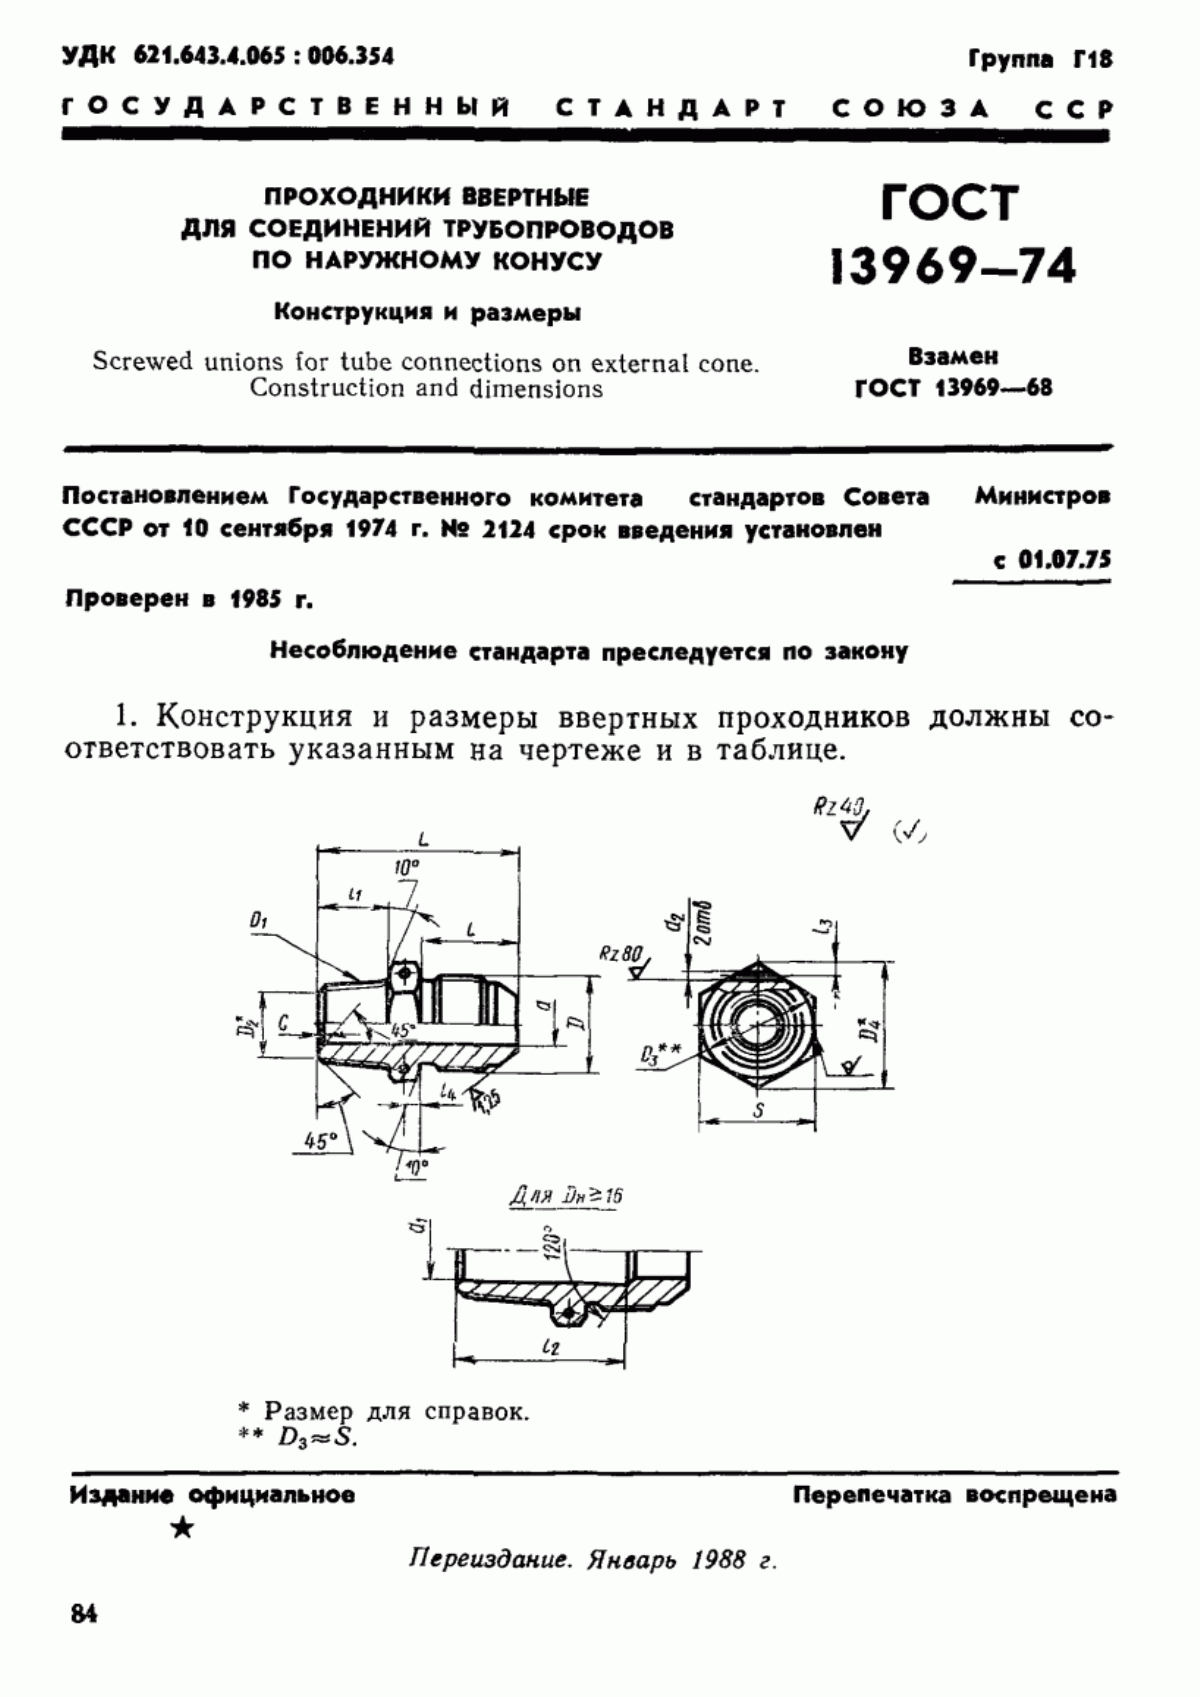 ГОСТ 13969-74 Проходники ввертные для соединений трубопроводов по наружному конусу. Конструкция и размеры